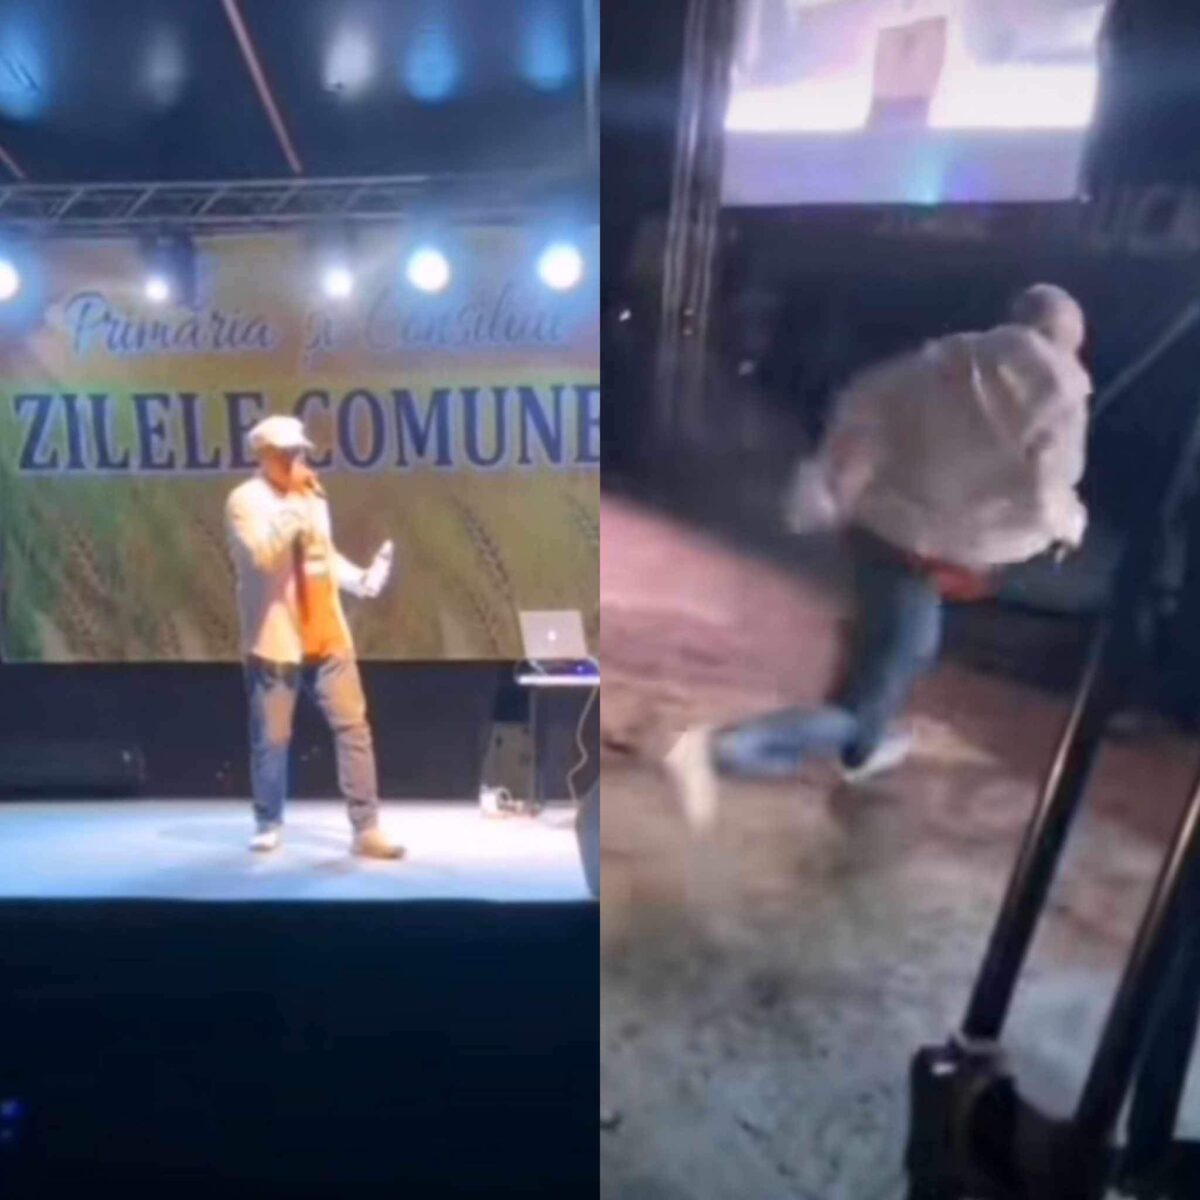 Artist român, căzătură la concert. A picat de pe scenă în văzul tuturor / VIDEO